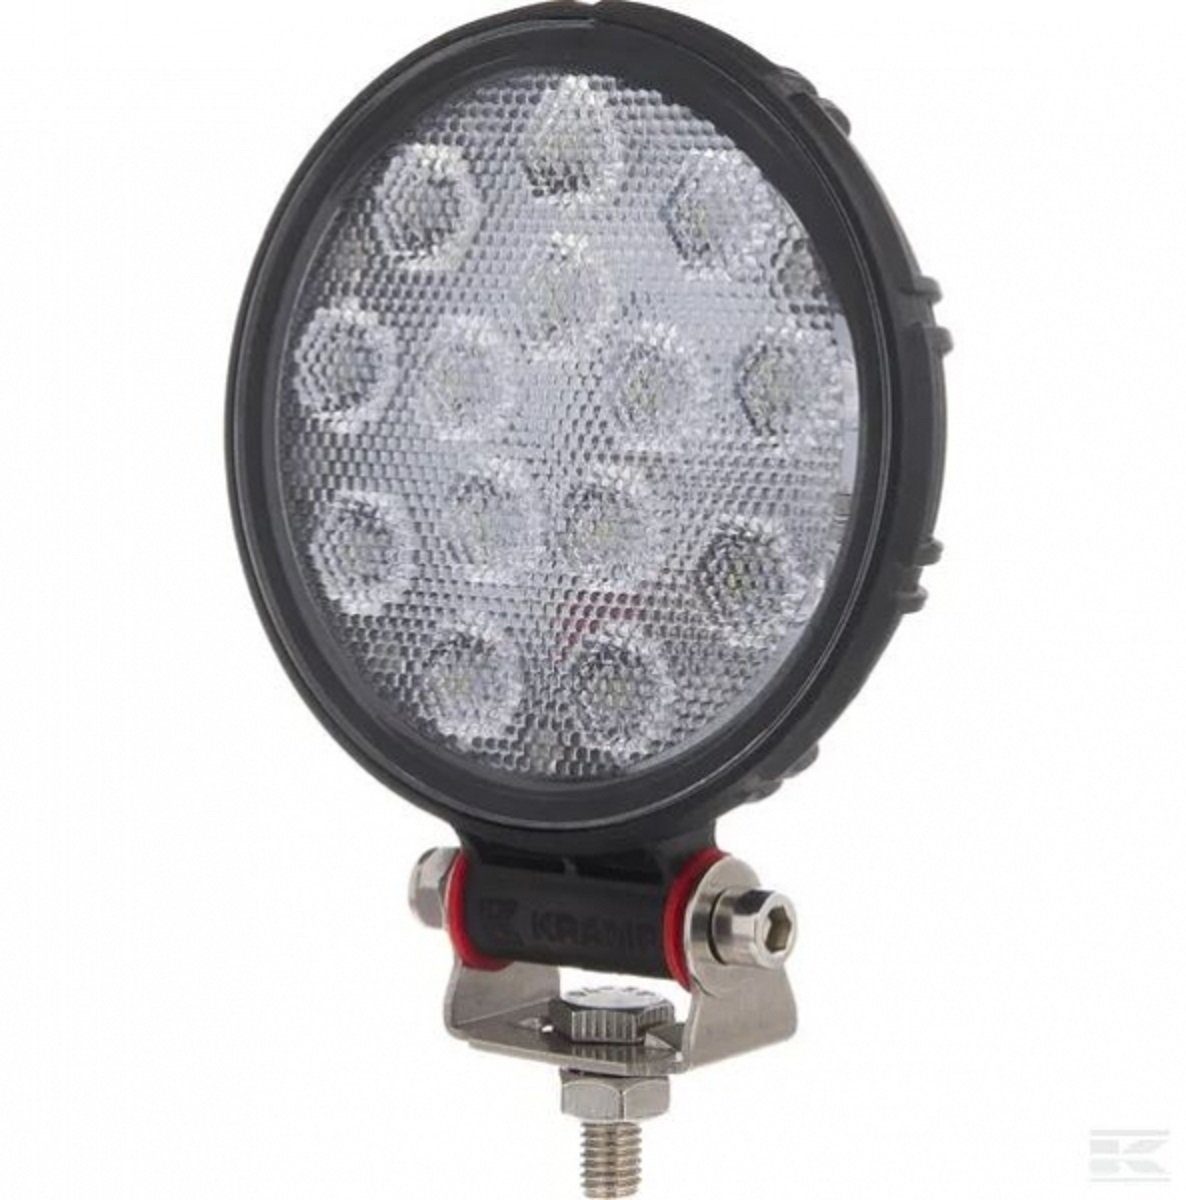 LED LED-Arbeitsscheinwerfer Scheinwerfer Kramp 14W 1800lm Flutlicht LA10401 Kramp